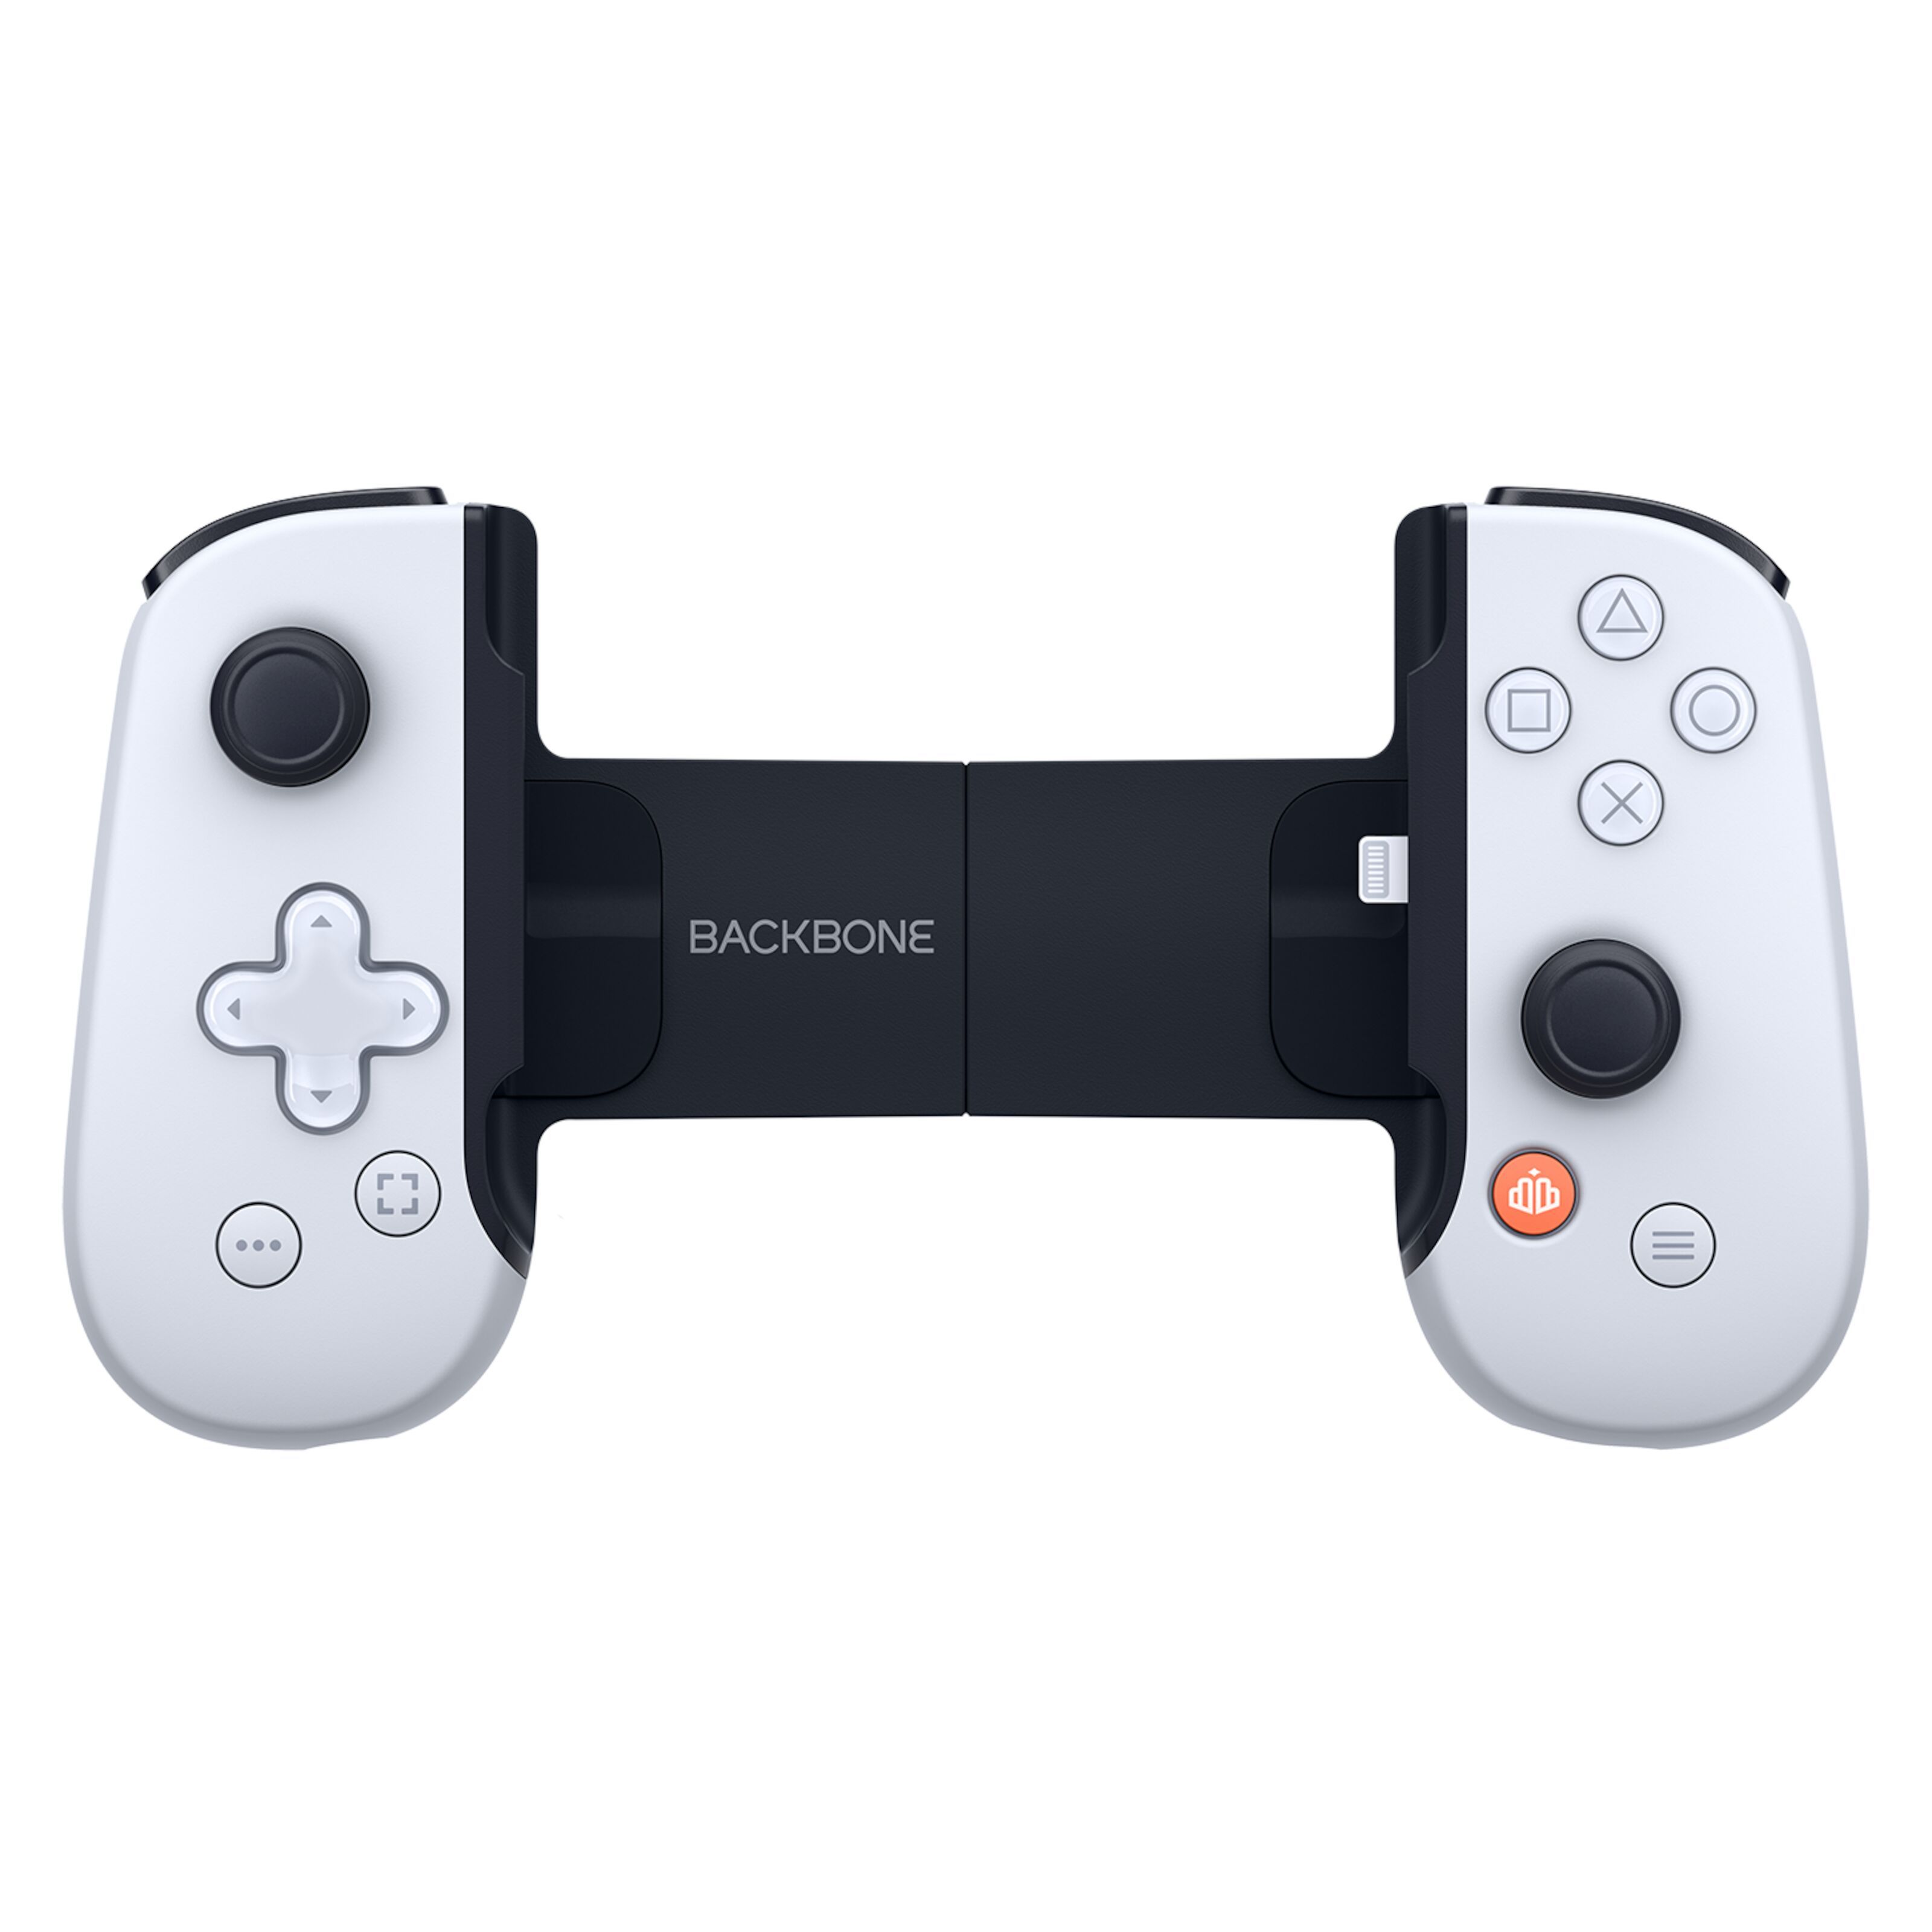 Backbone One Playstation Remote Håndkontroller for iPhone - Håndkontroller  | Kjell.com